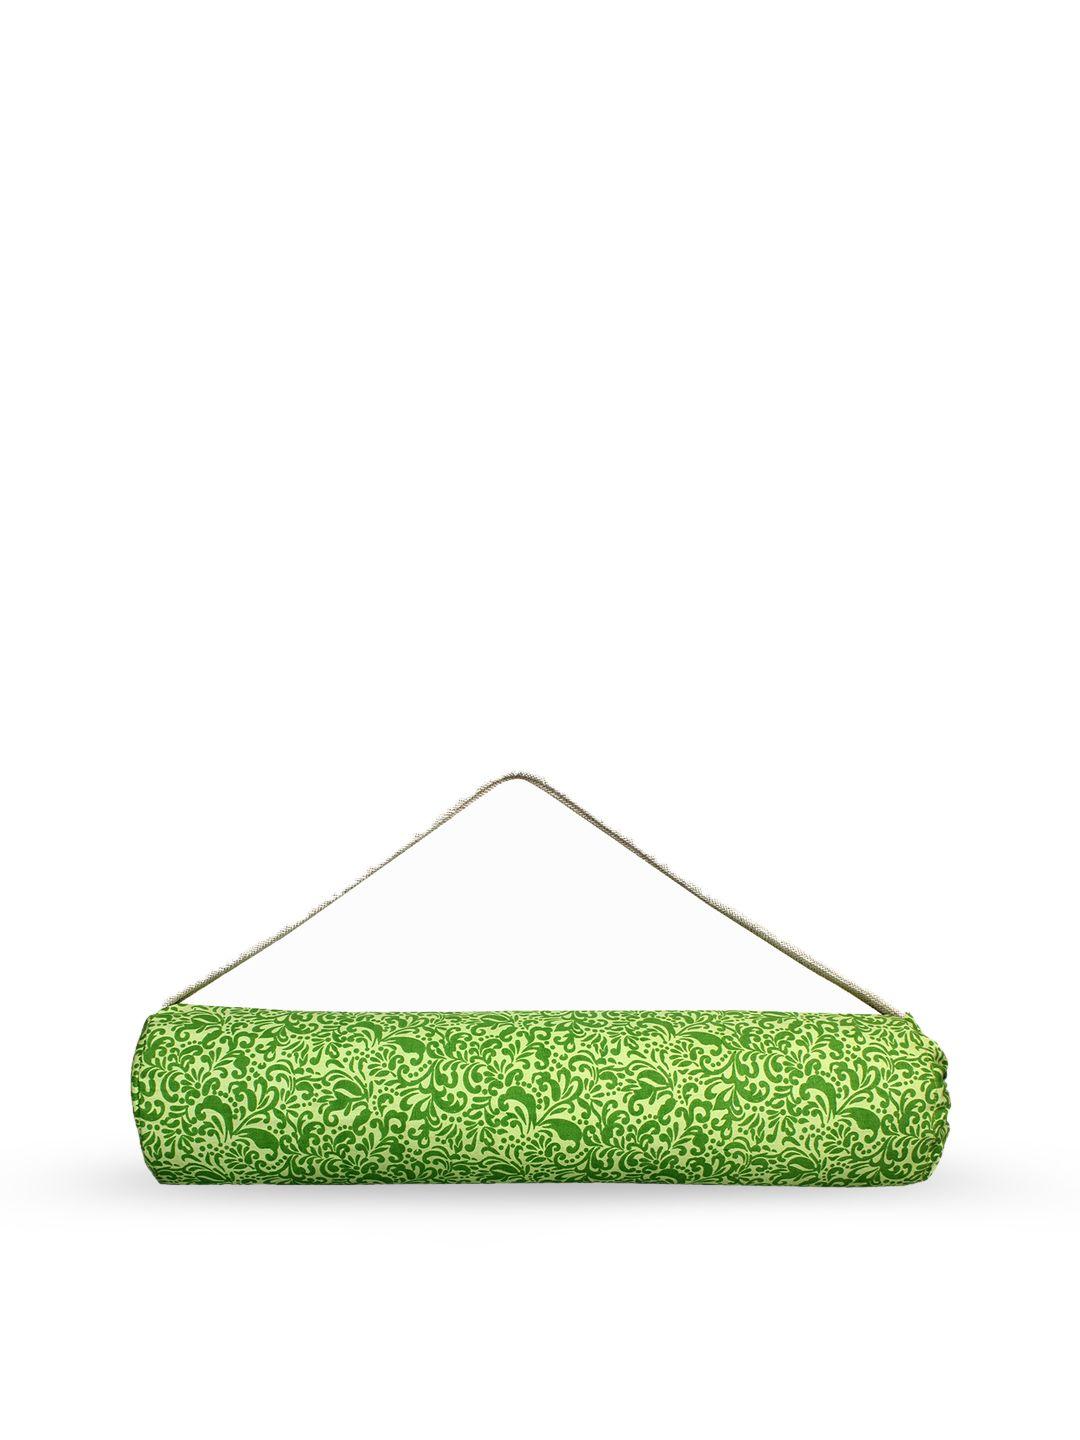 anekaant green printed canvas yoga mat duffle bag